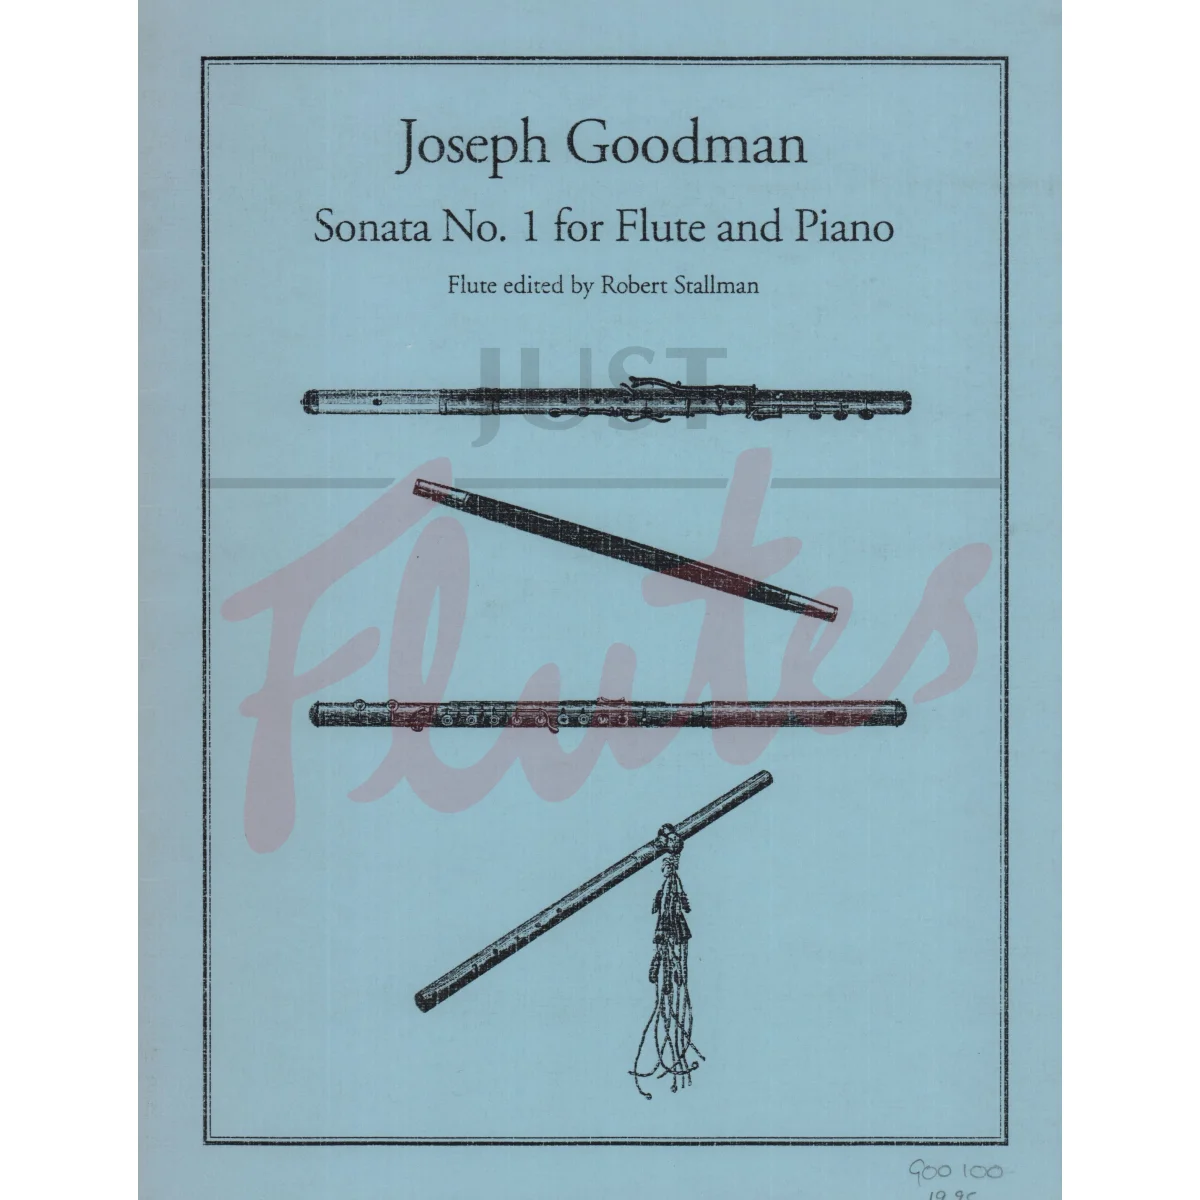 Sonata No. 1 for Flute and Piano